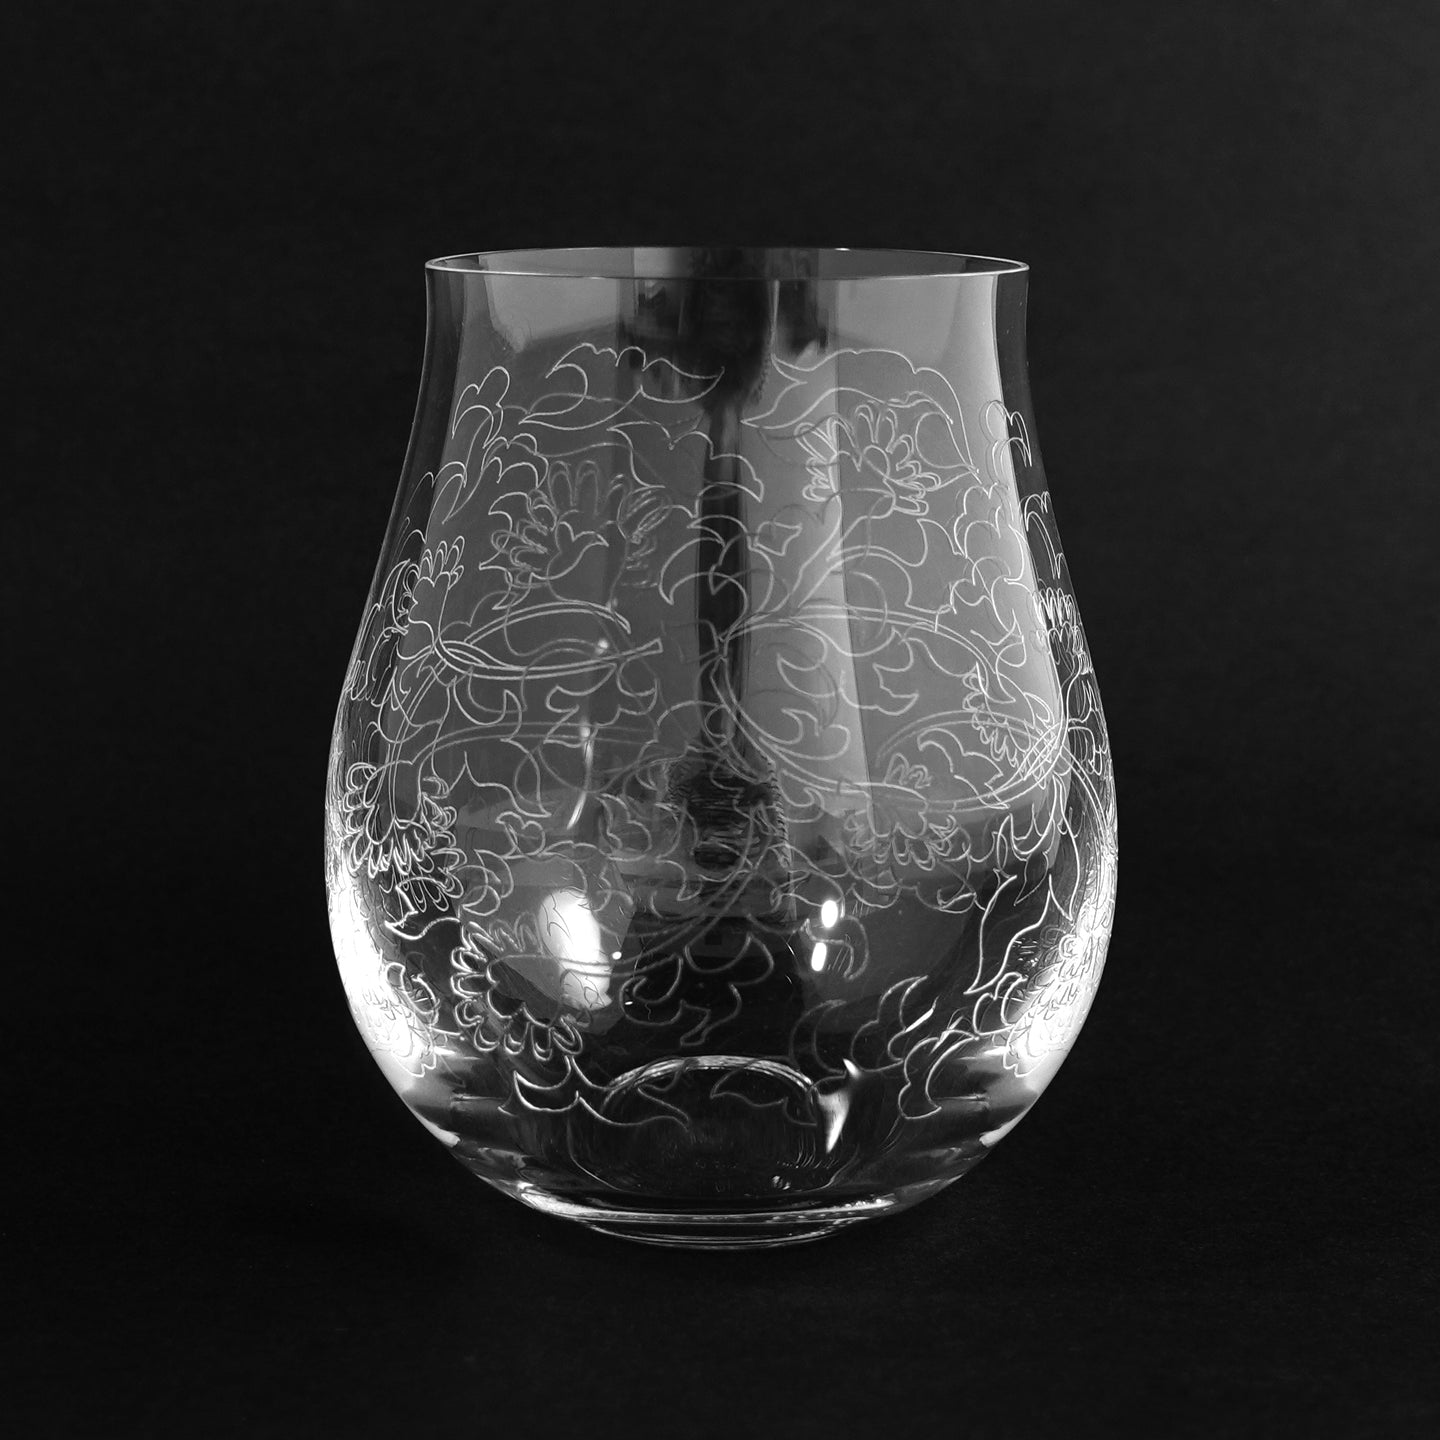 バッカス320-1 - THE GLASS GIFT SHOP SOKICHI